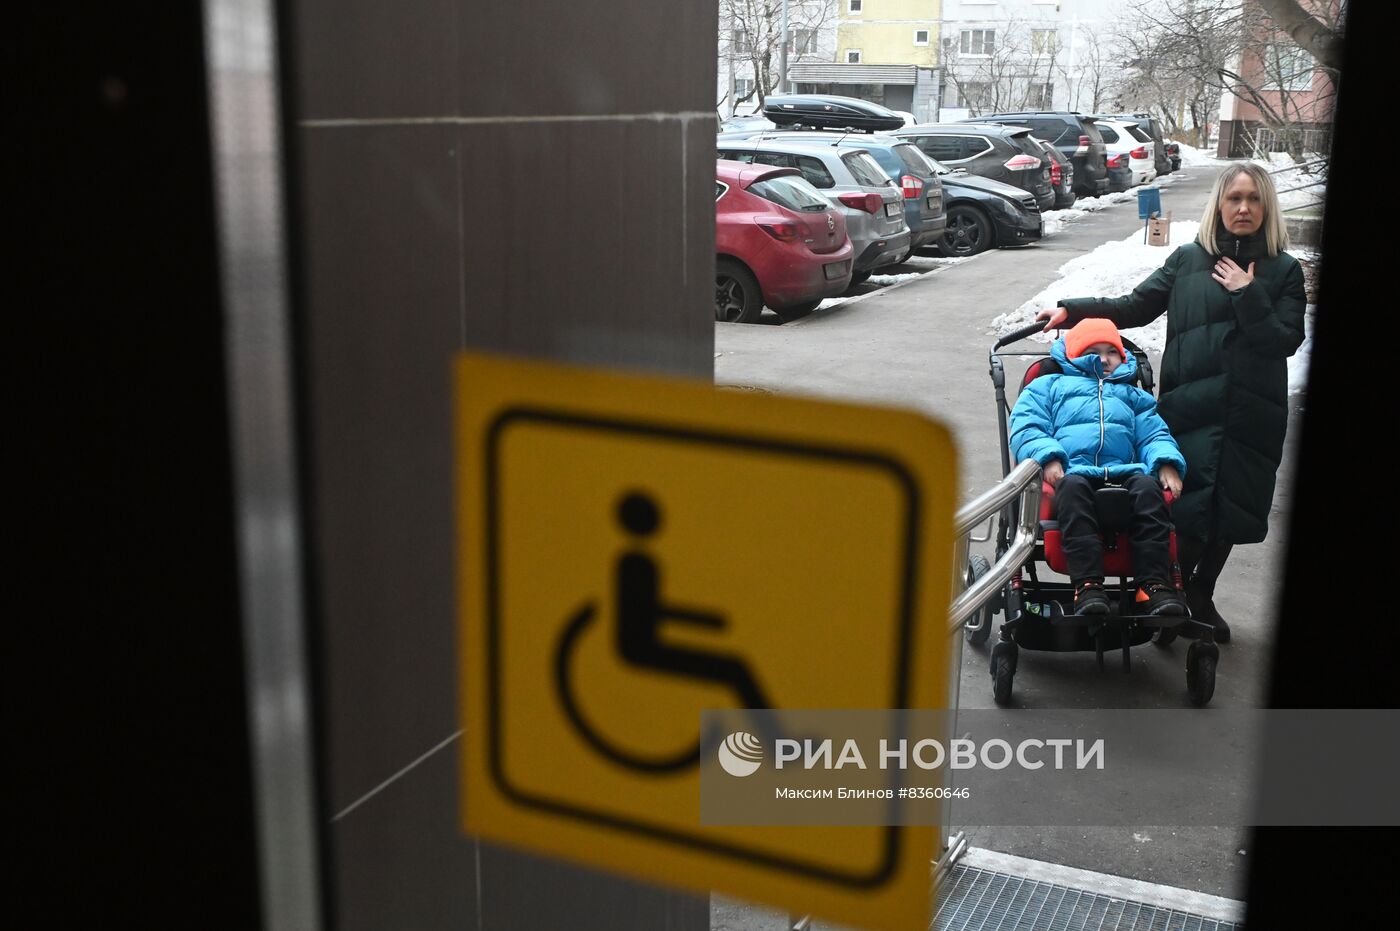 Подъемная платформа для людей с ограниченными возможностями здоровья в Москве